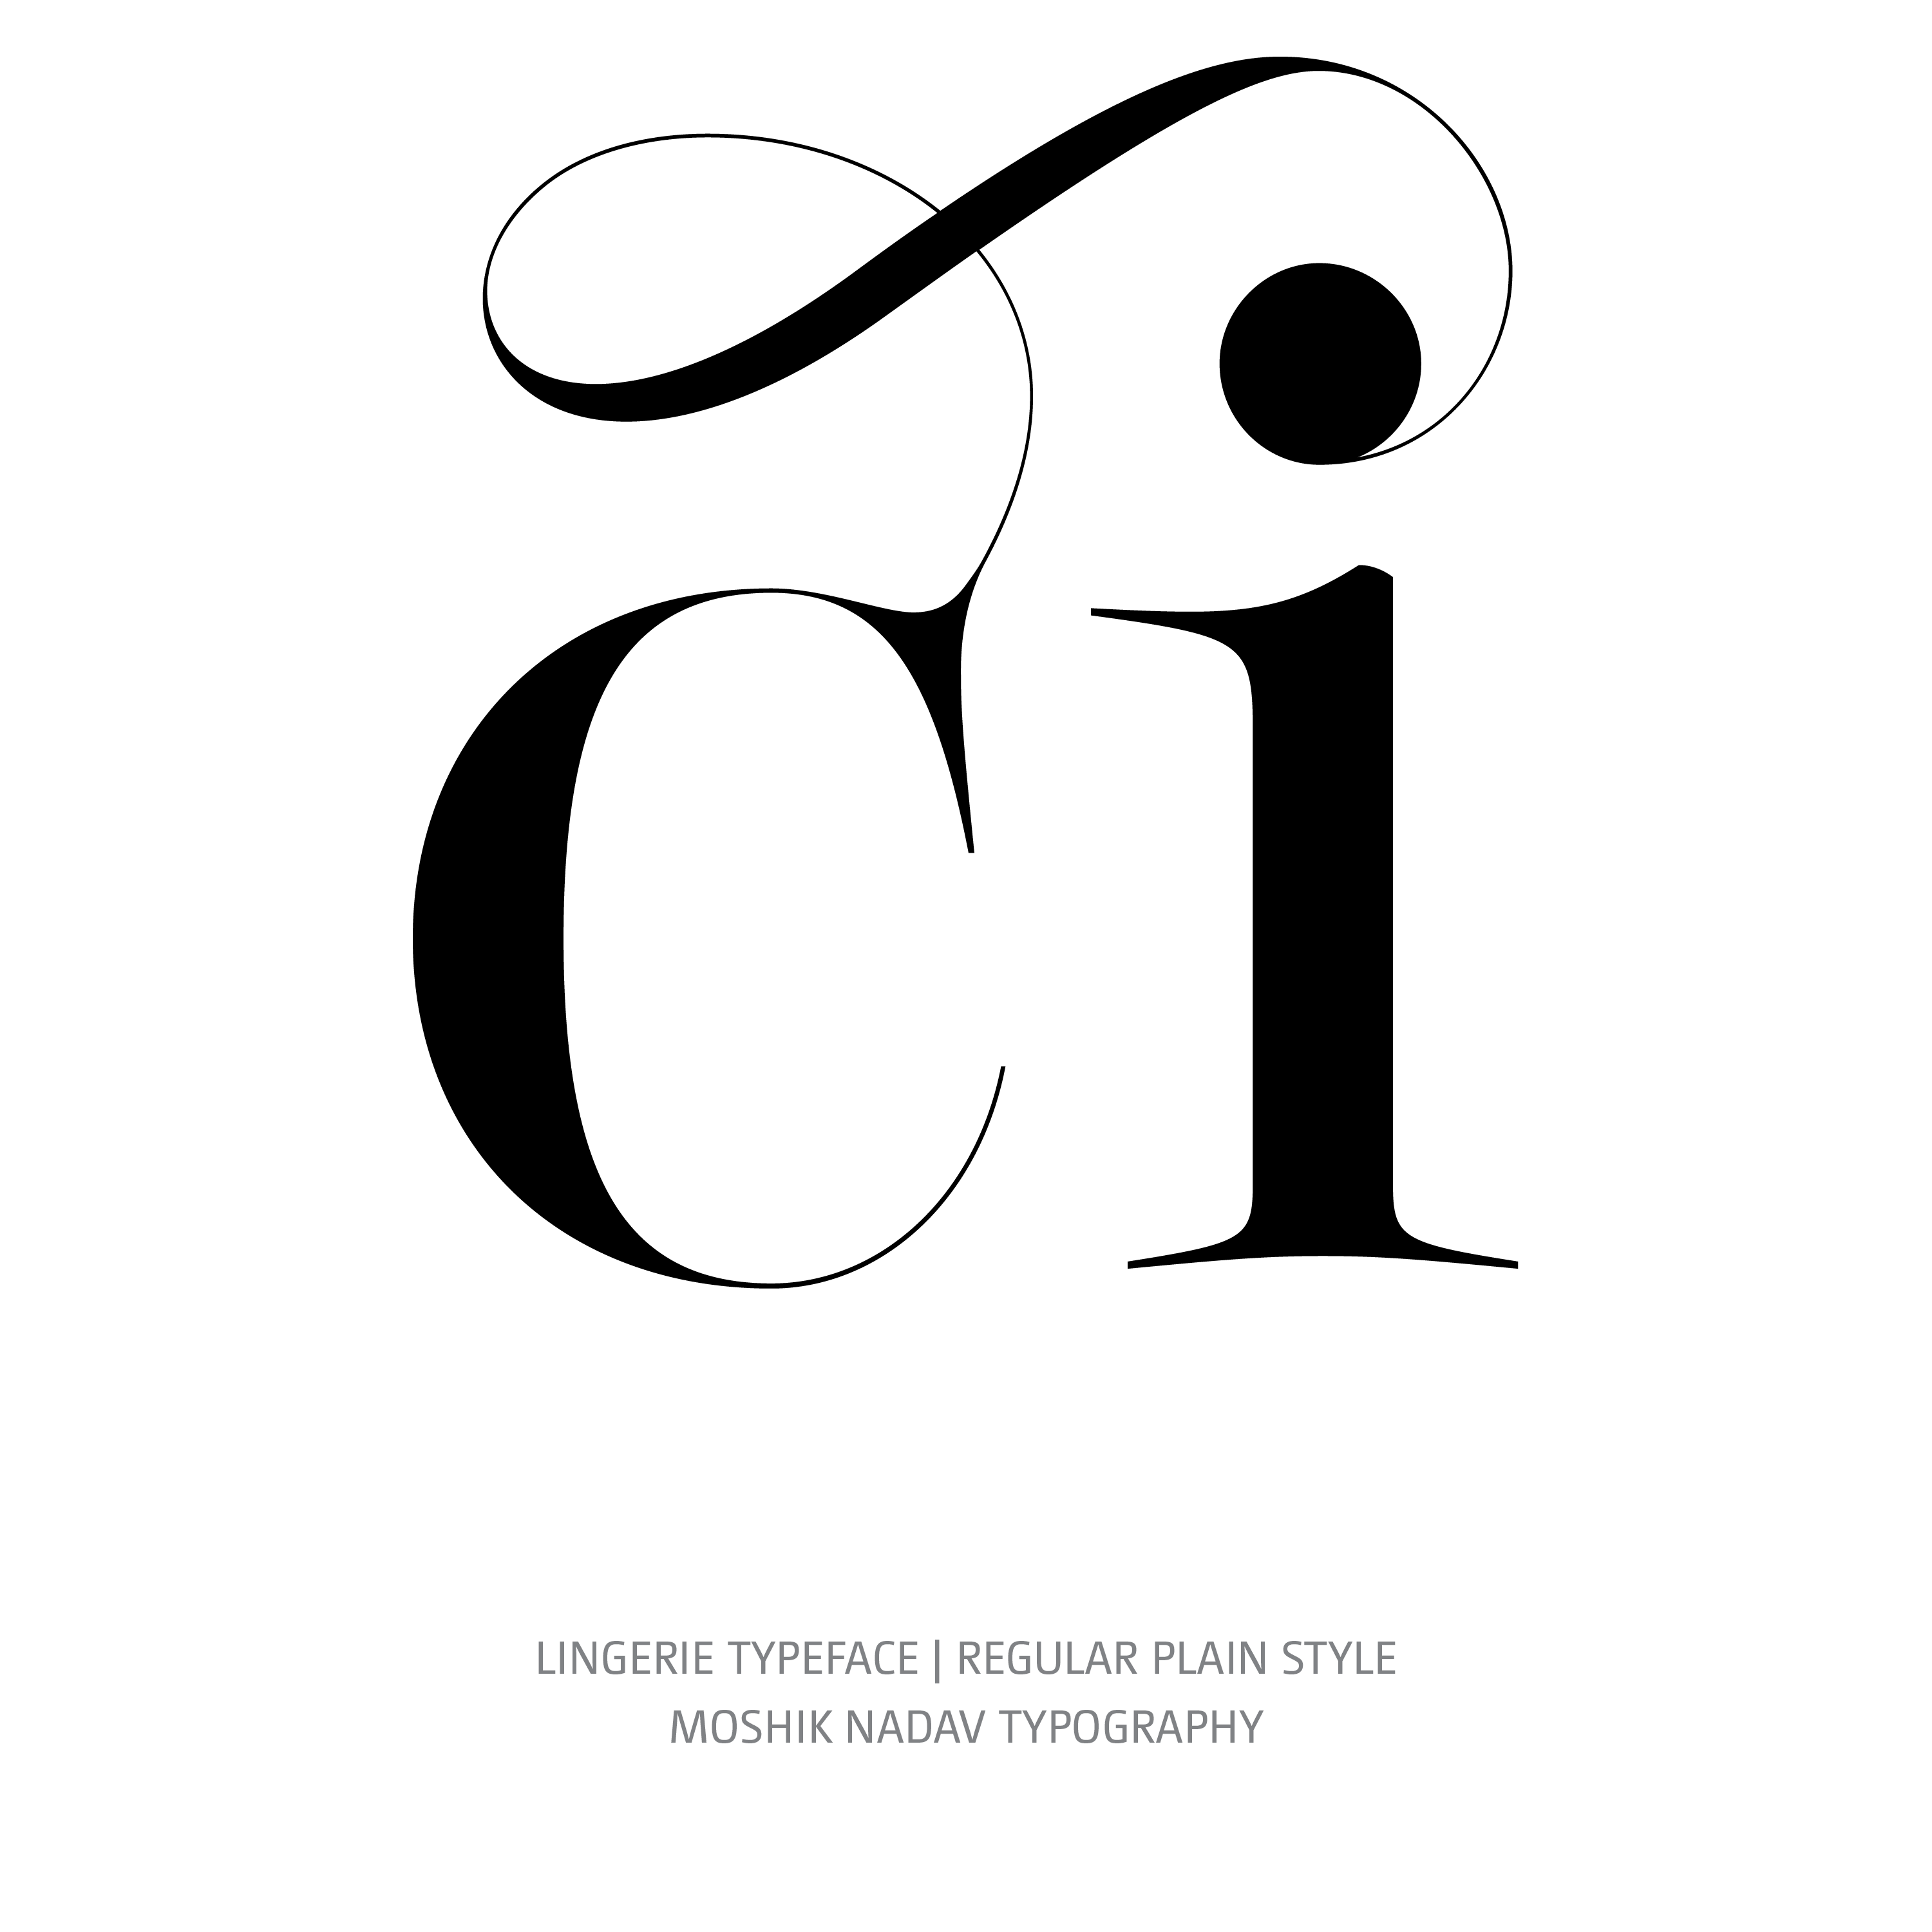 Lingerie Typeface Regular Plain glyph